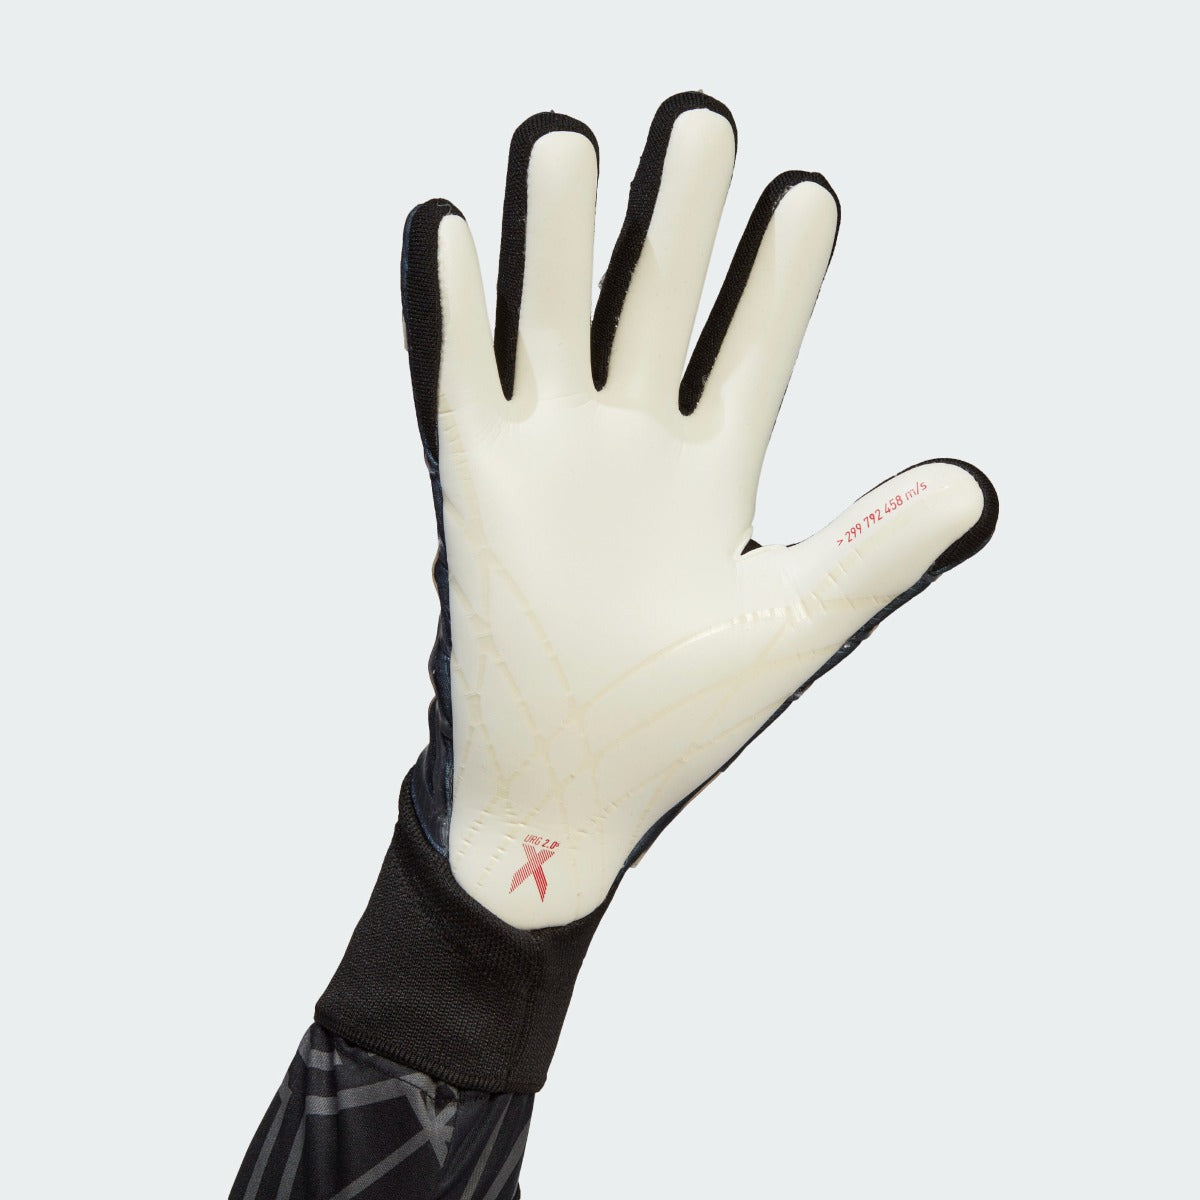 Adidas X Pro Goalkeeper Gloves - Black-Blue Rush (Single - Inner)